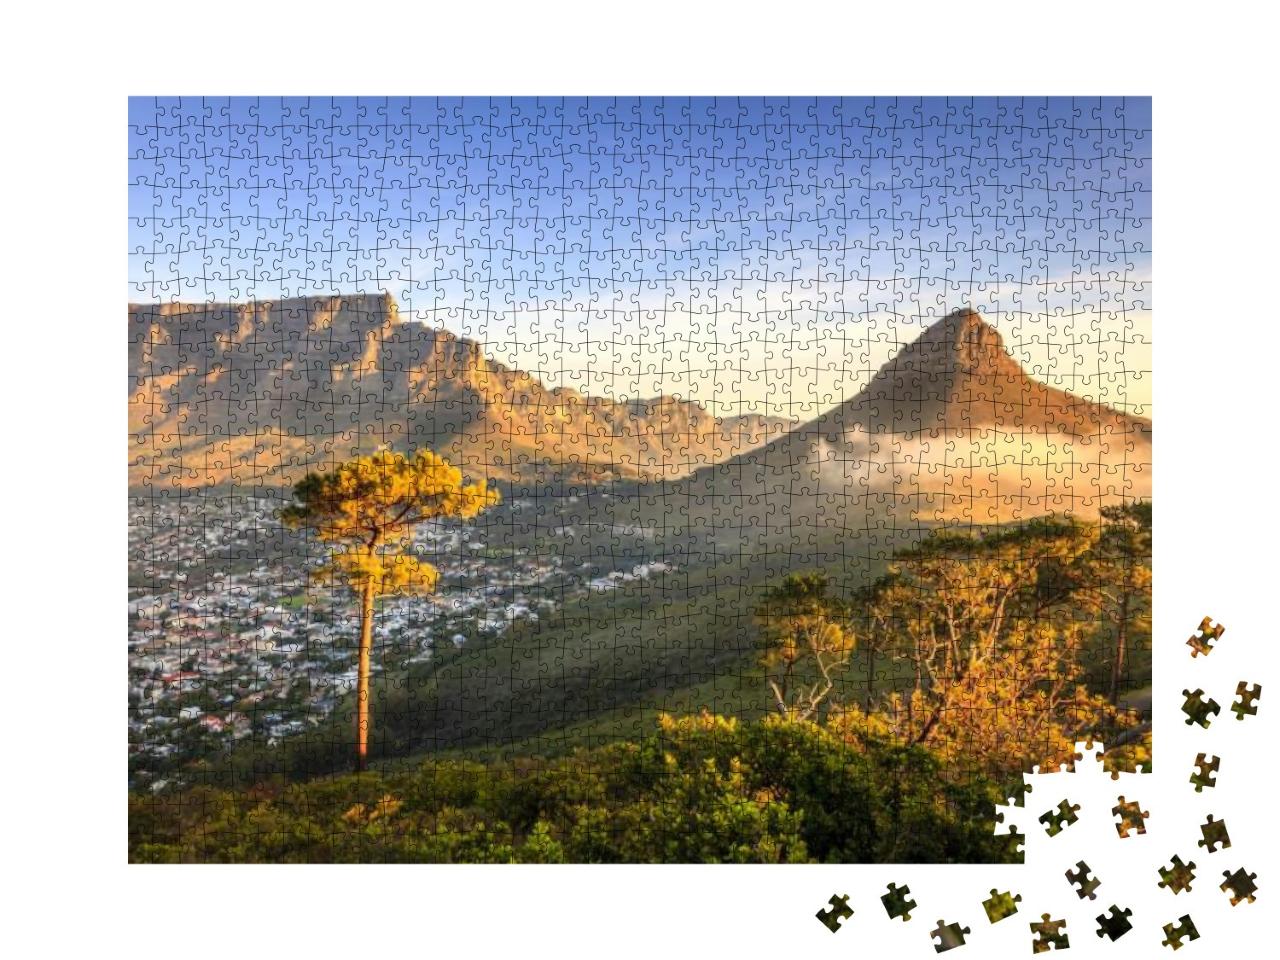 Puzzle 1000 Teile „Lions Head Mountain in Kapstadt, Südafrika“